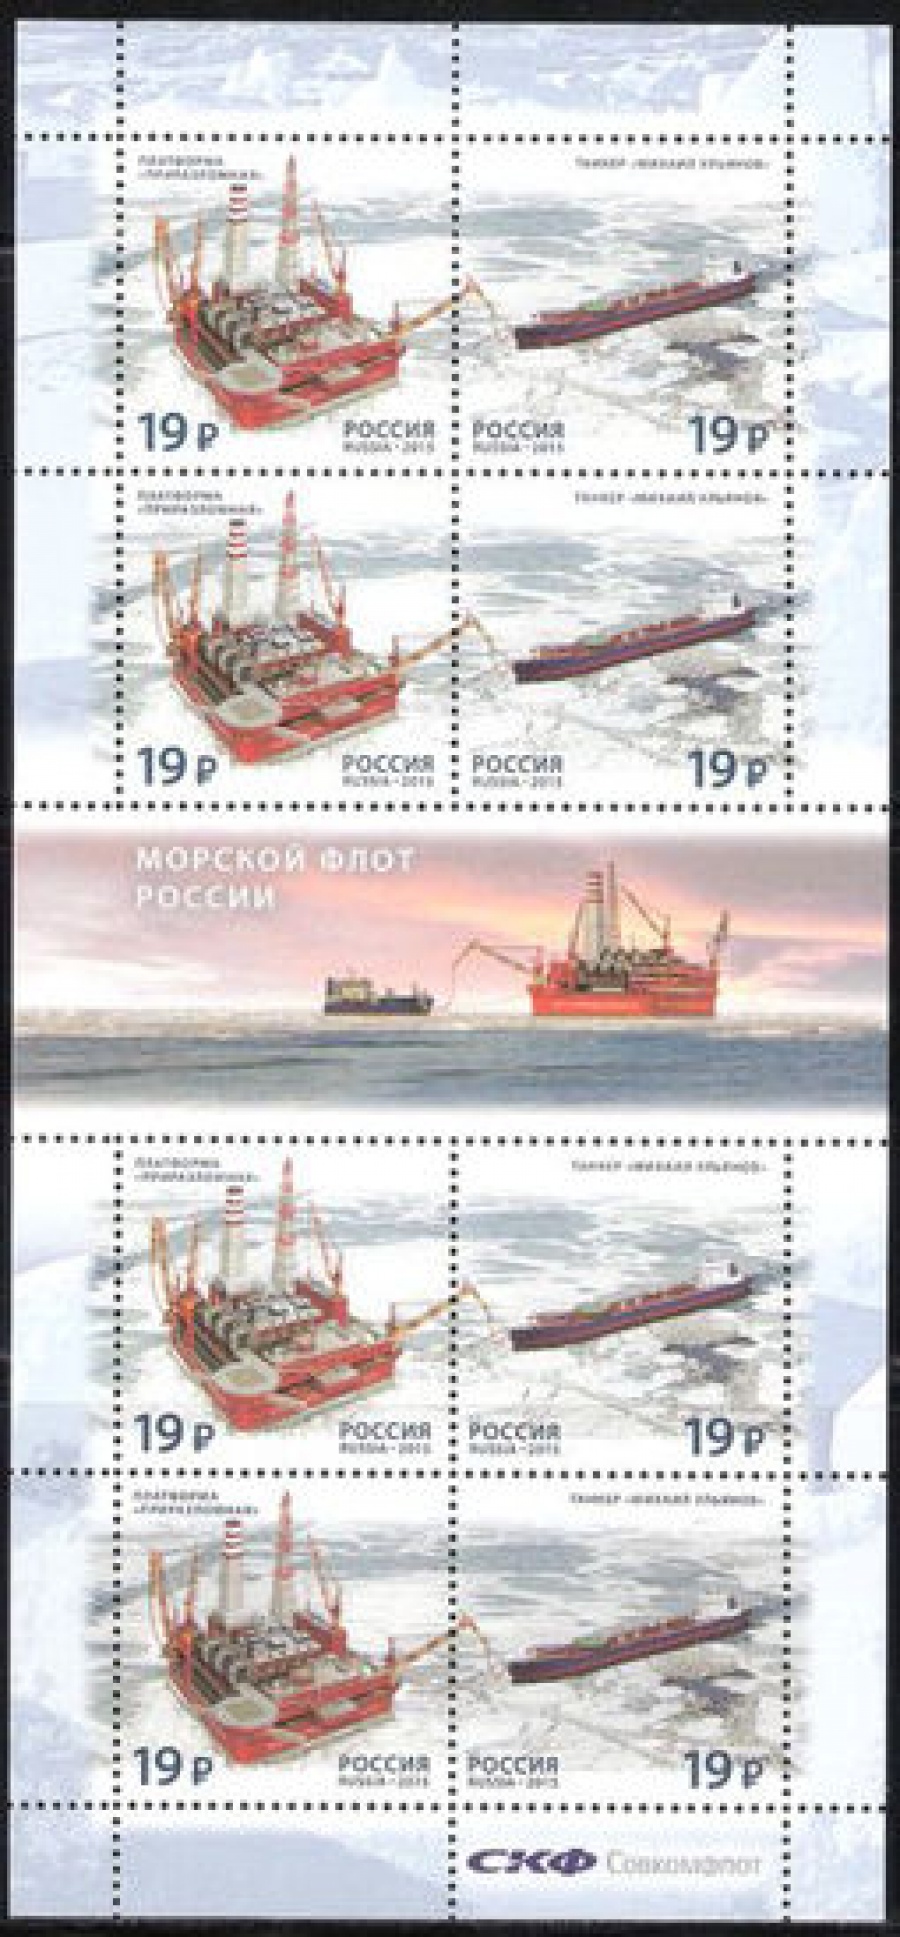 Лист почтовых марок - Россия 2015 № 2004-2005 Морской флот России. Продолжение серии